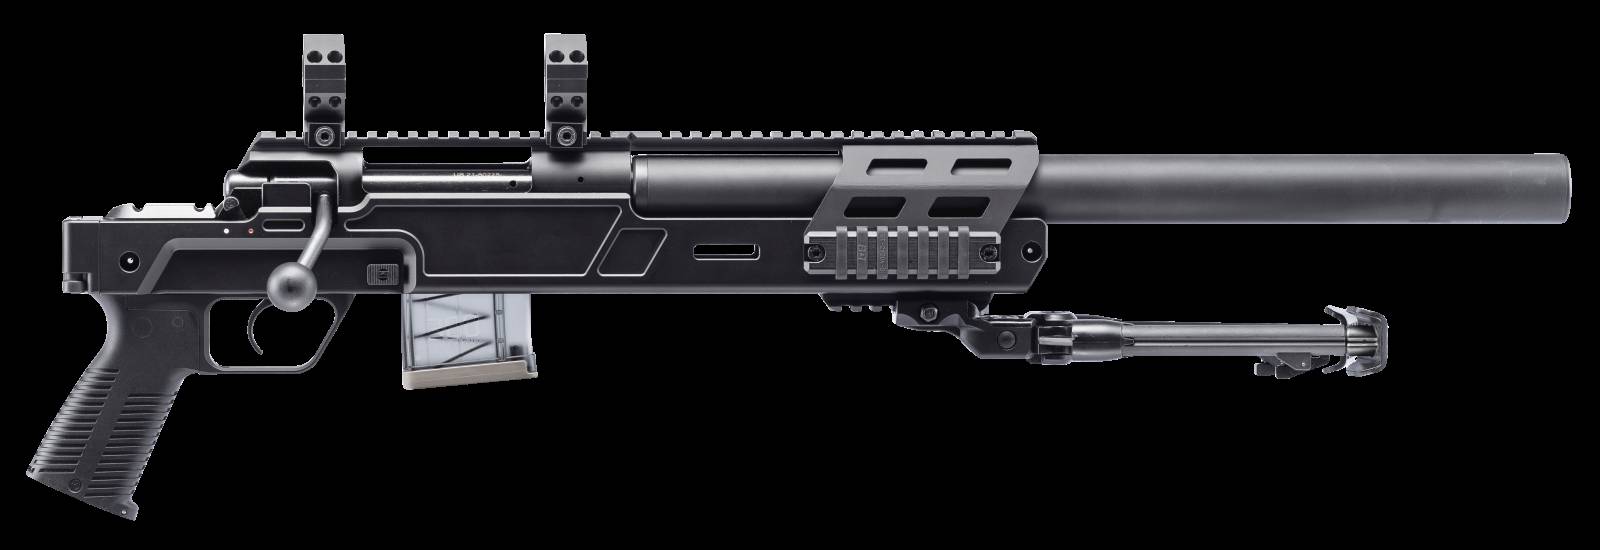 B&T Firearms SPR300 Pistol Kit 300 Blackout 10+1 9.80